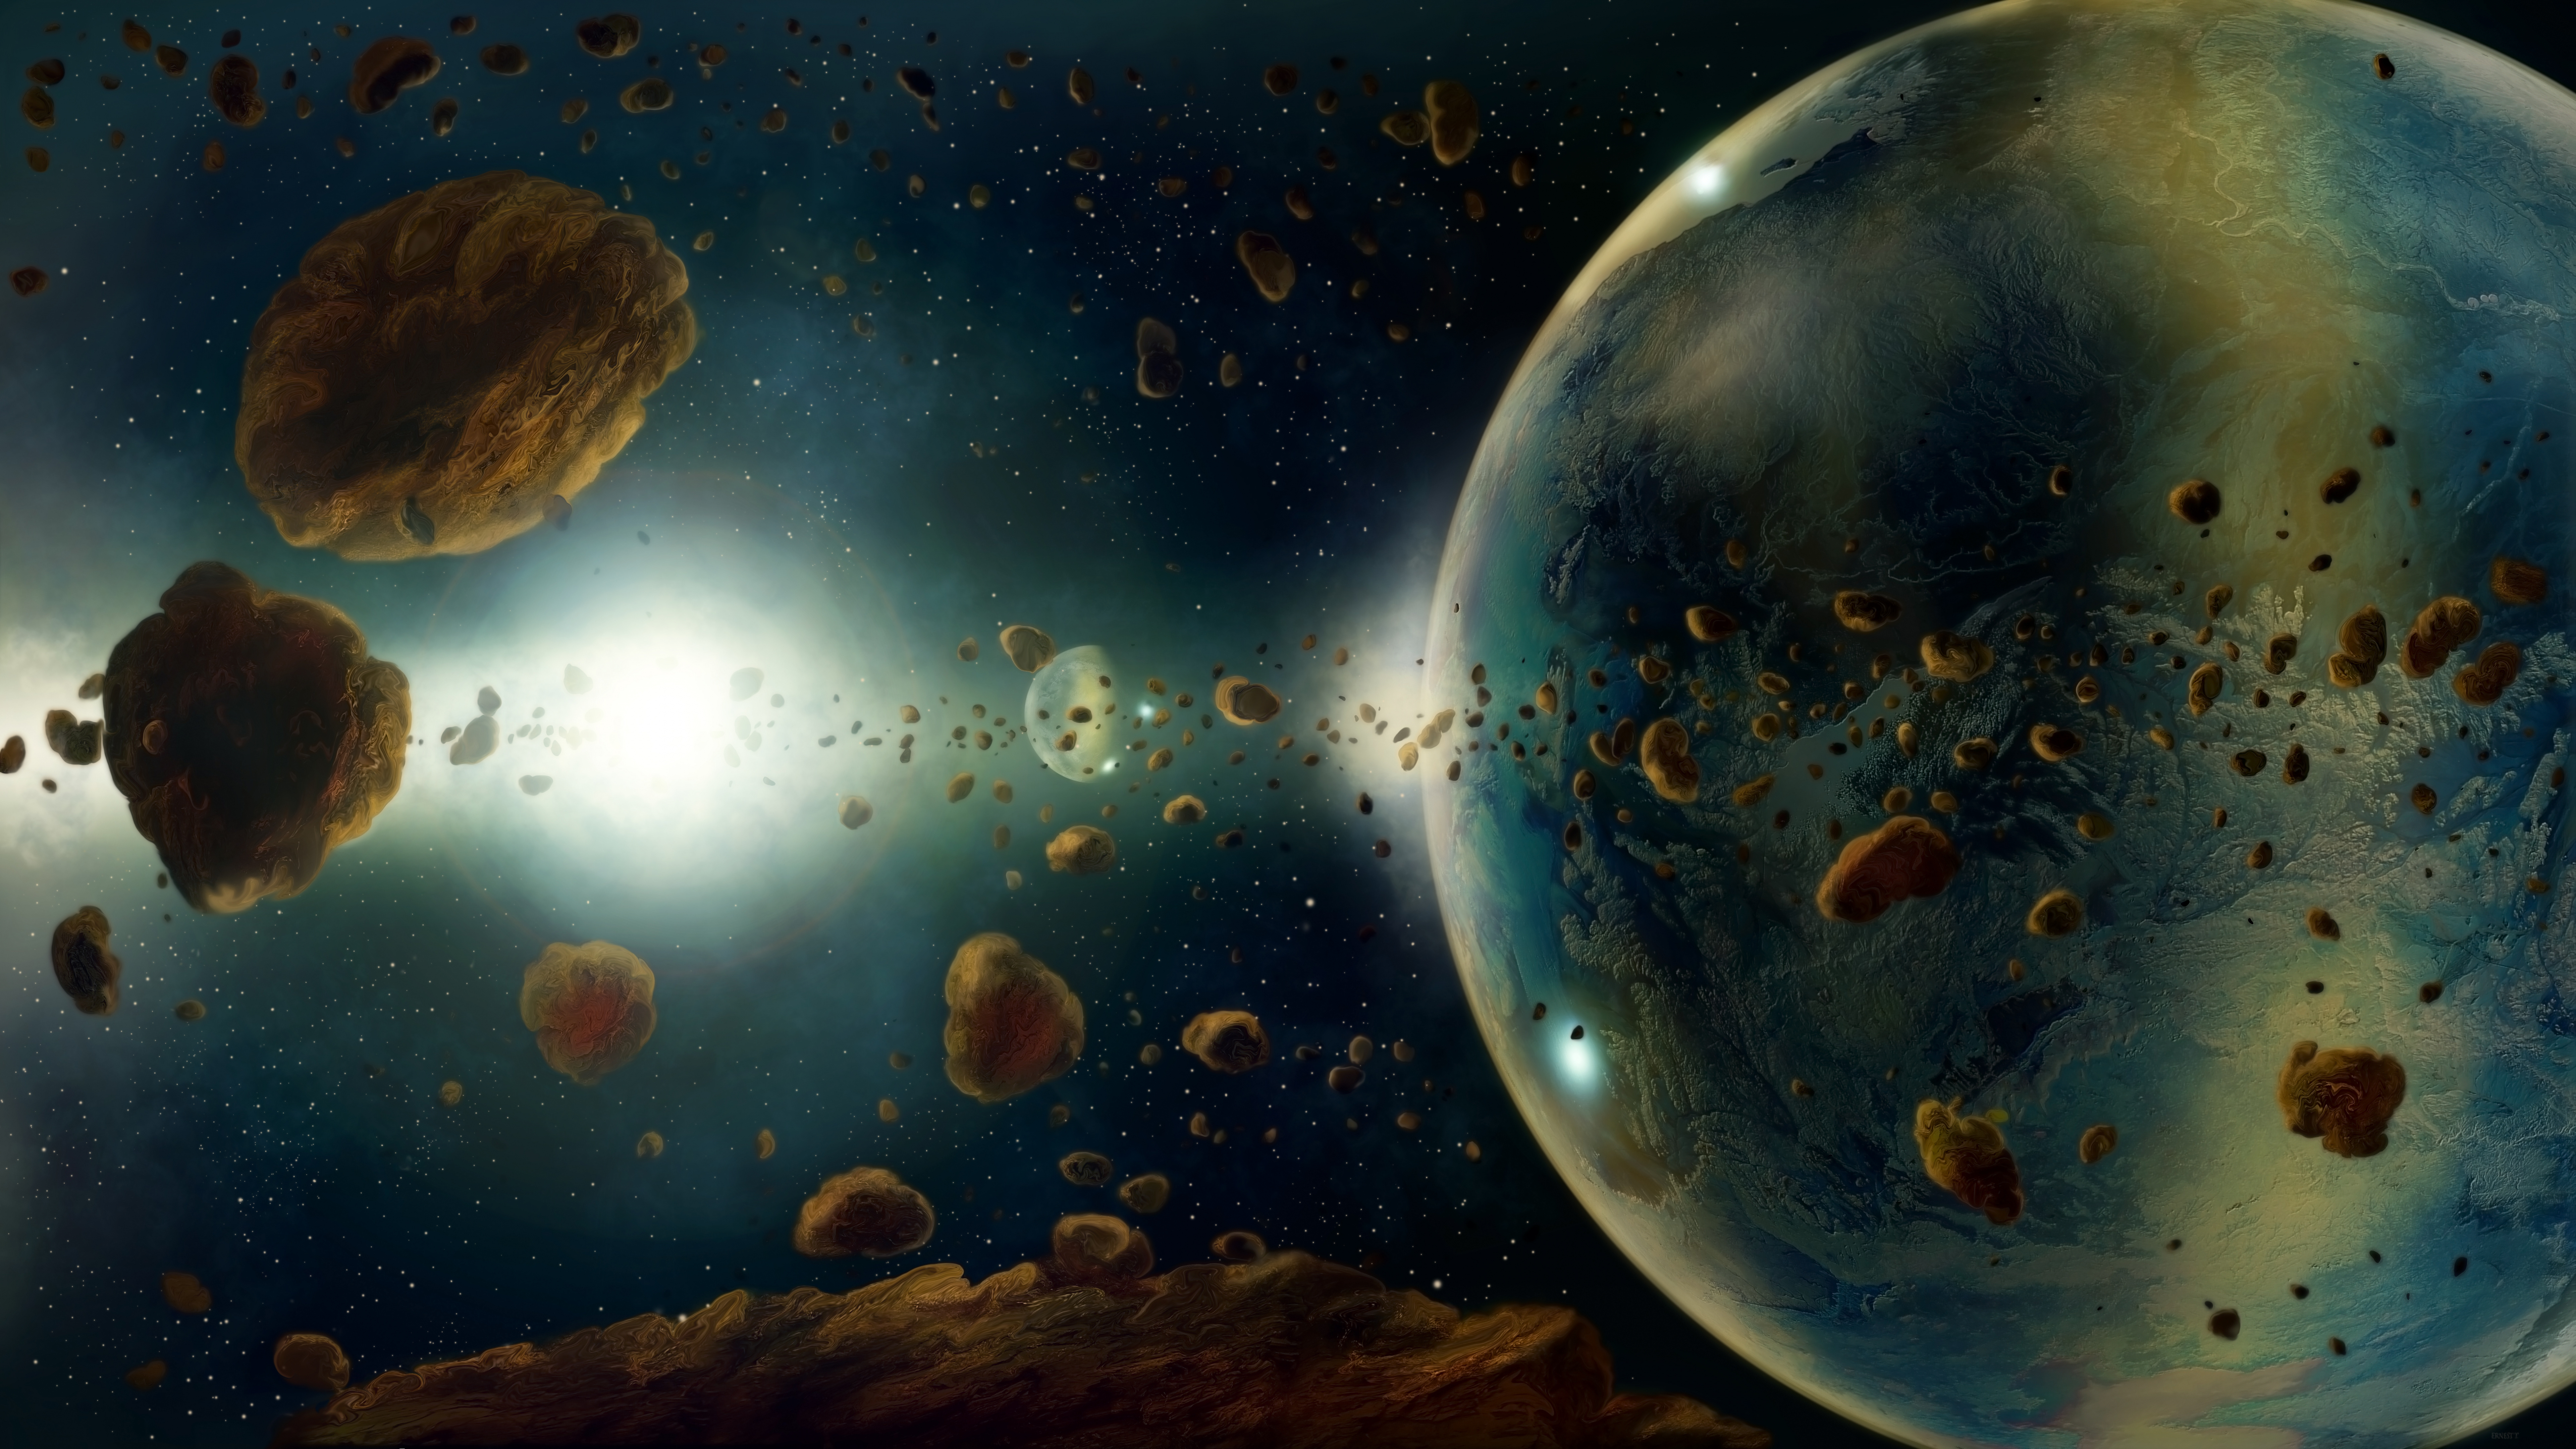 小行星, 这个星球, 外层空间, 天文学对象, 宇宙 壁纸 7680x4320 允许